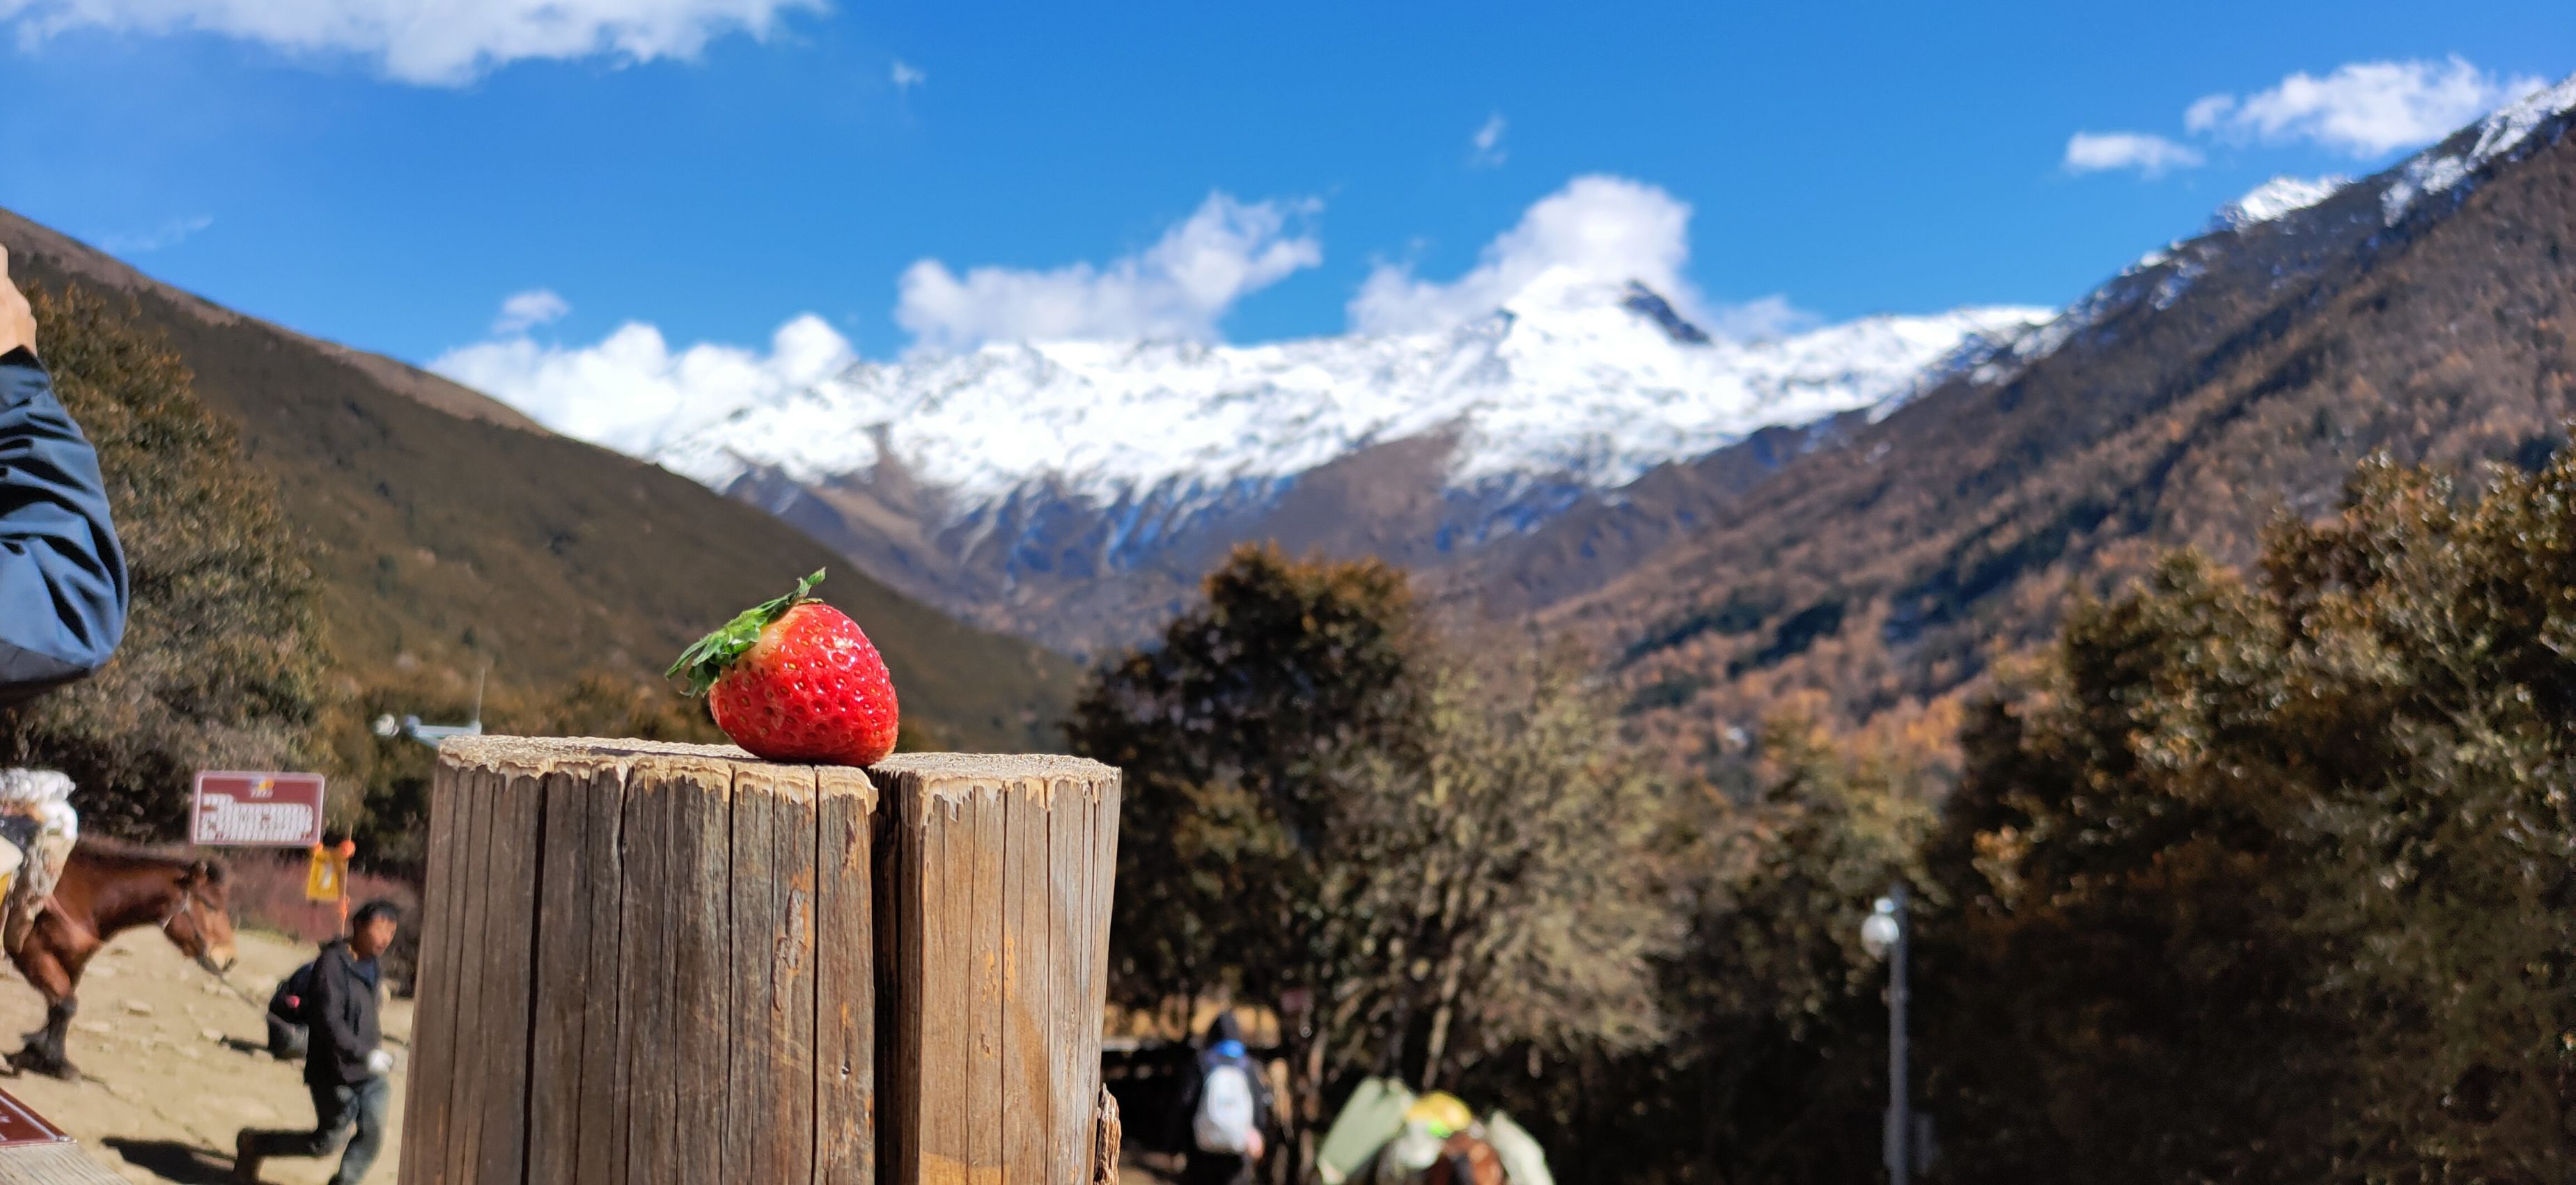 【蔚蓝】带着草莓爬雪山